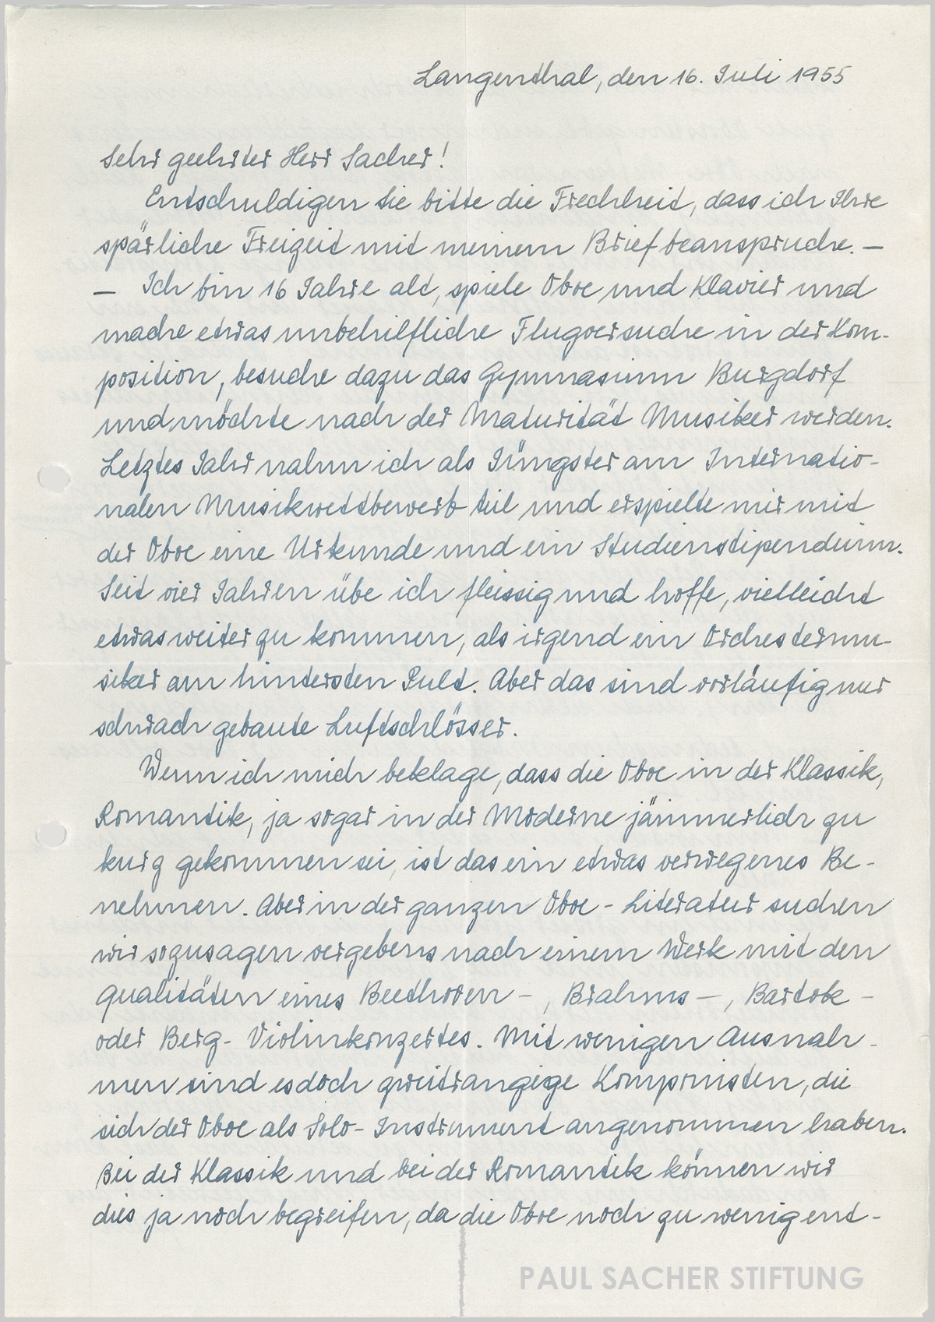 Heinz Holliger, Brief an Paul Sacher, 16. Mai 1955, S. 1 (Sammlung Paul Sacher, PSS)